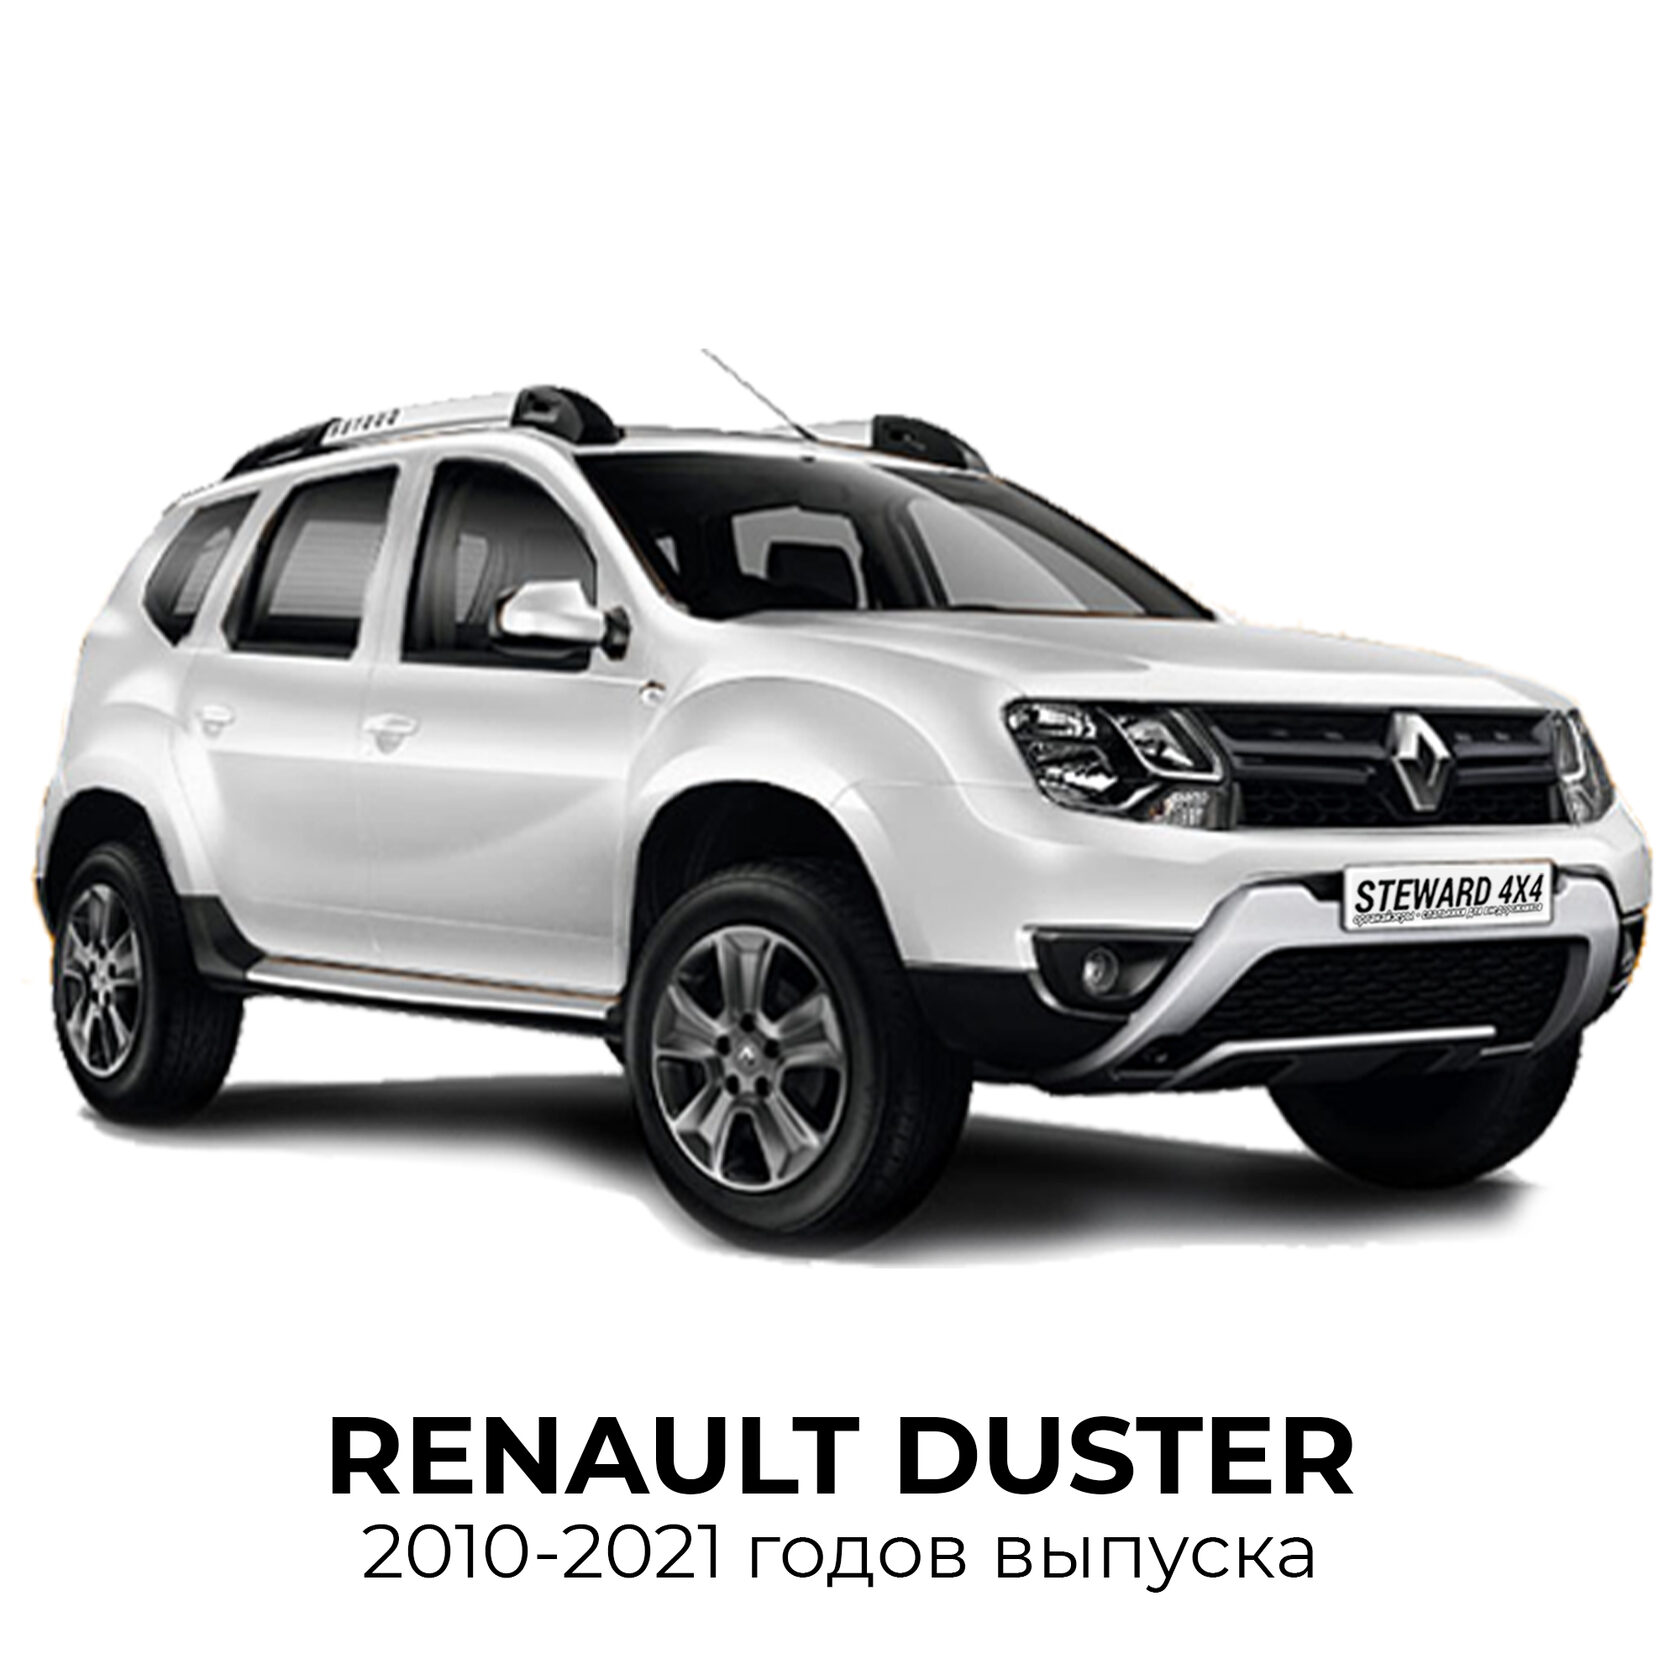 Рено дастер купить в кредит. Renault Duster 2015. Renault Duster 2020. Renault Duster 2016. Renault Duster 2014.